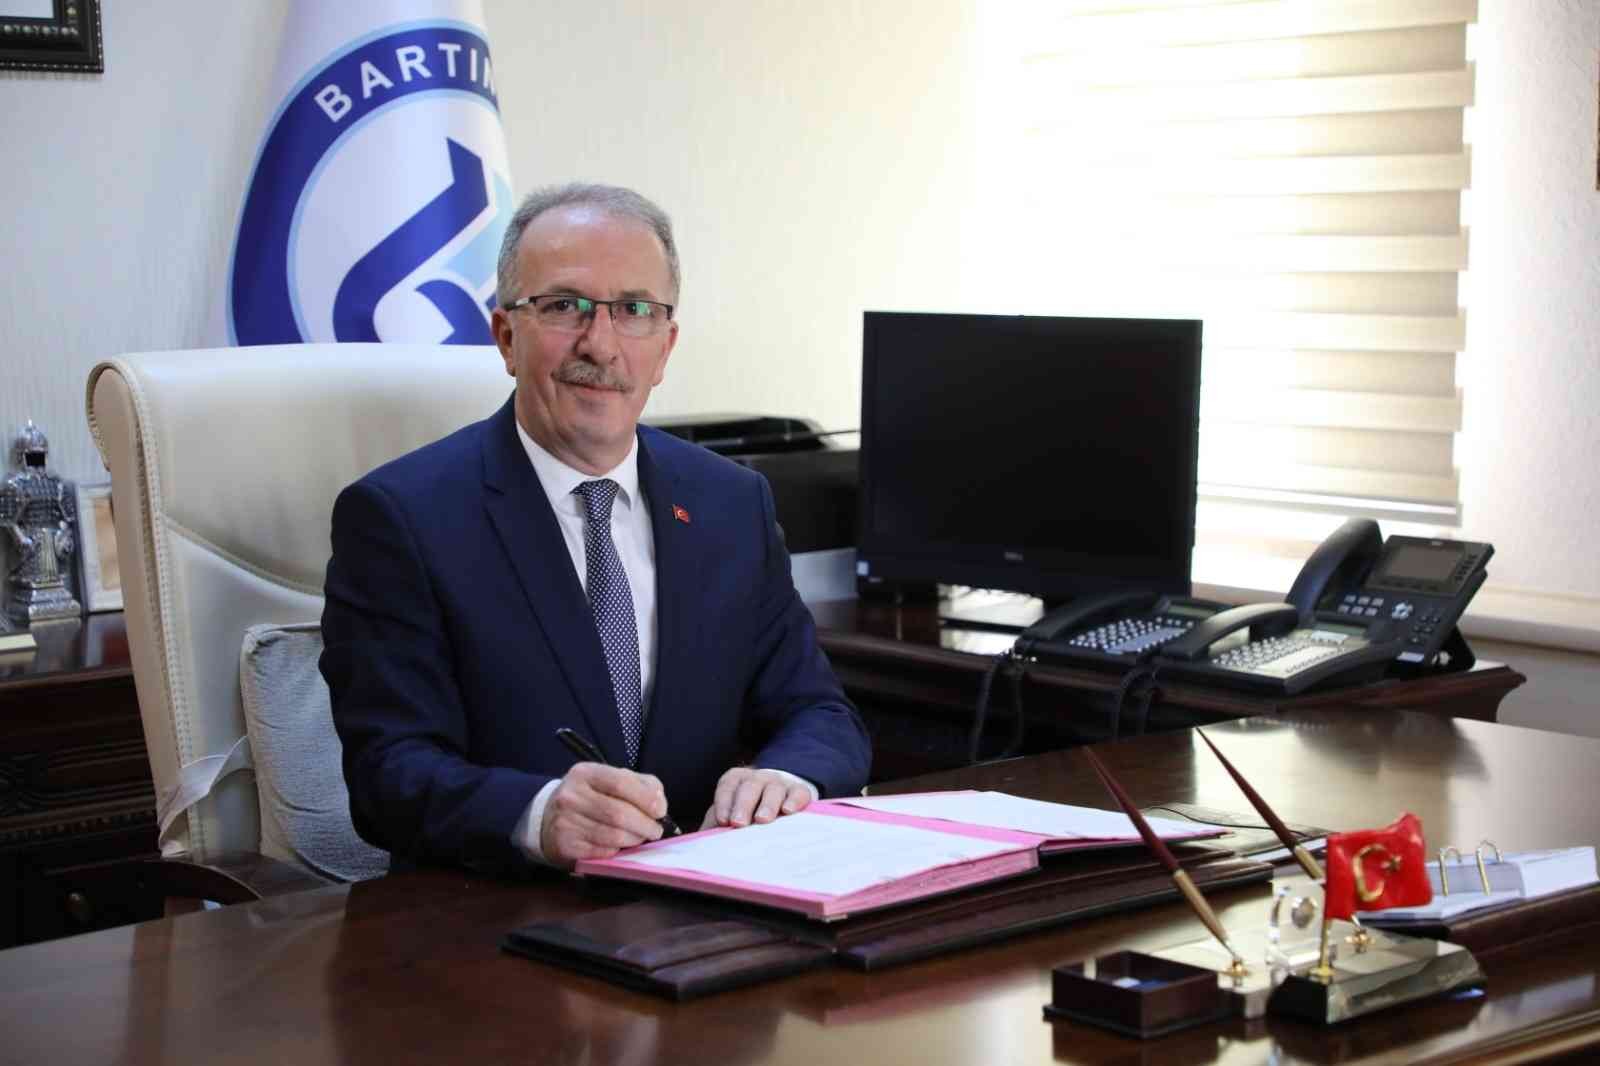 Bartın Üniversitesi ile Erzincan Binali Yıldırım Üniversitesi arasında protokol imzalandı #bartin